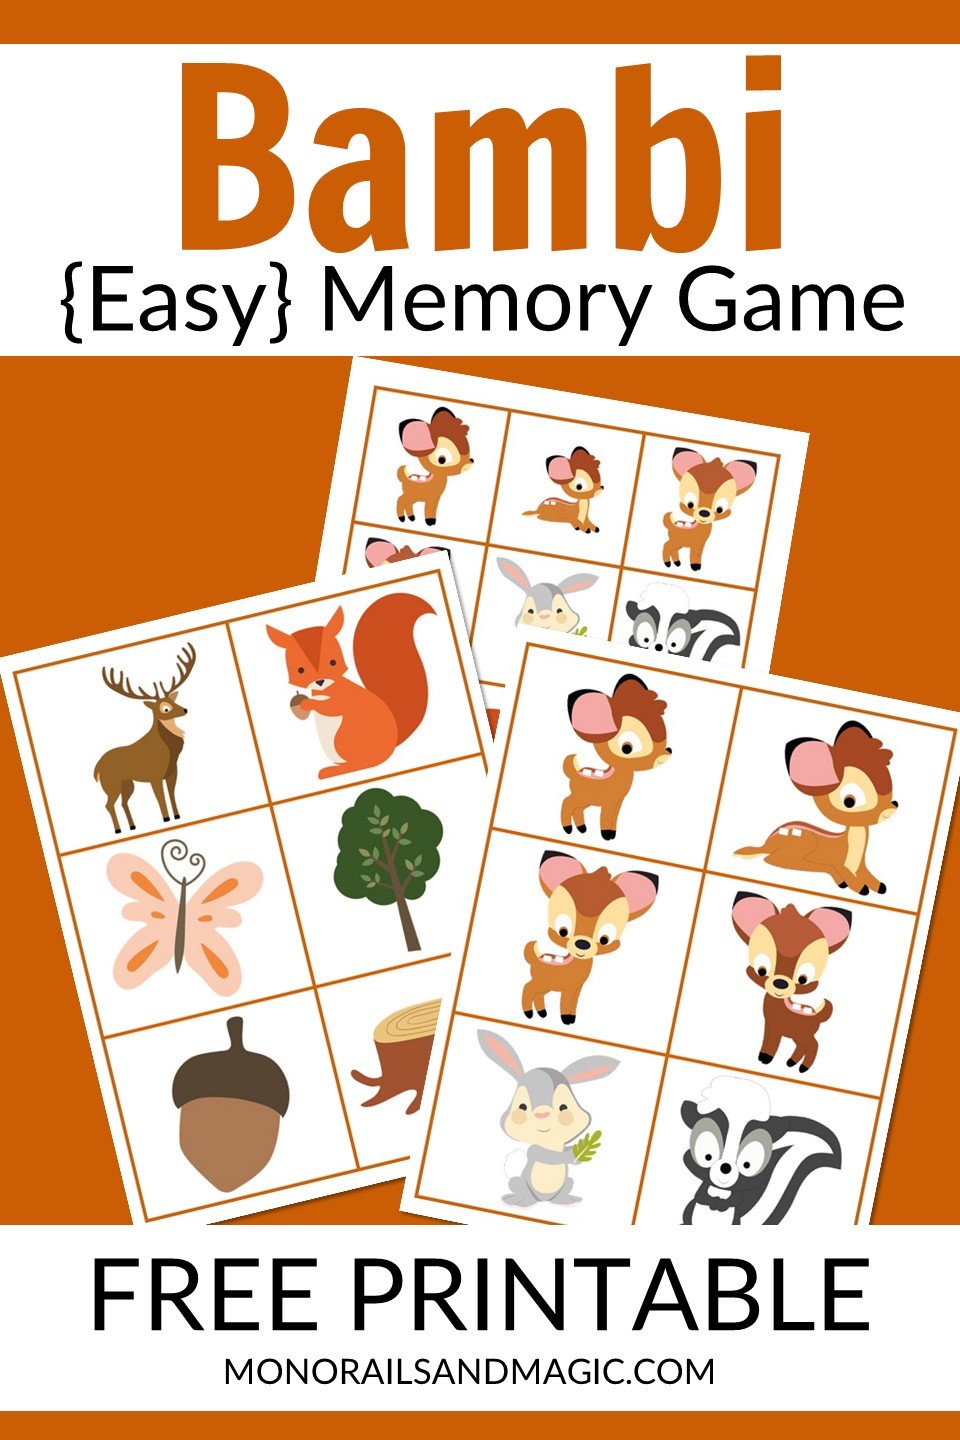 Free printable Bambi memory game for kids.